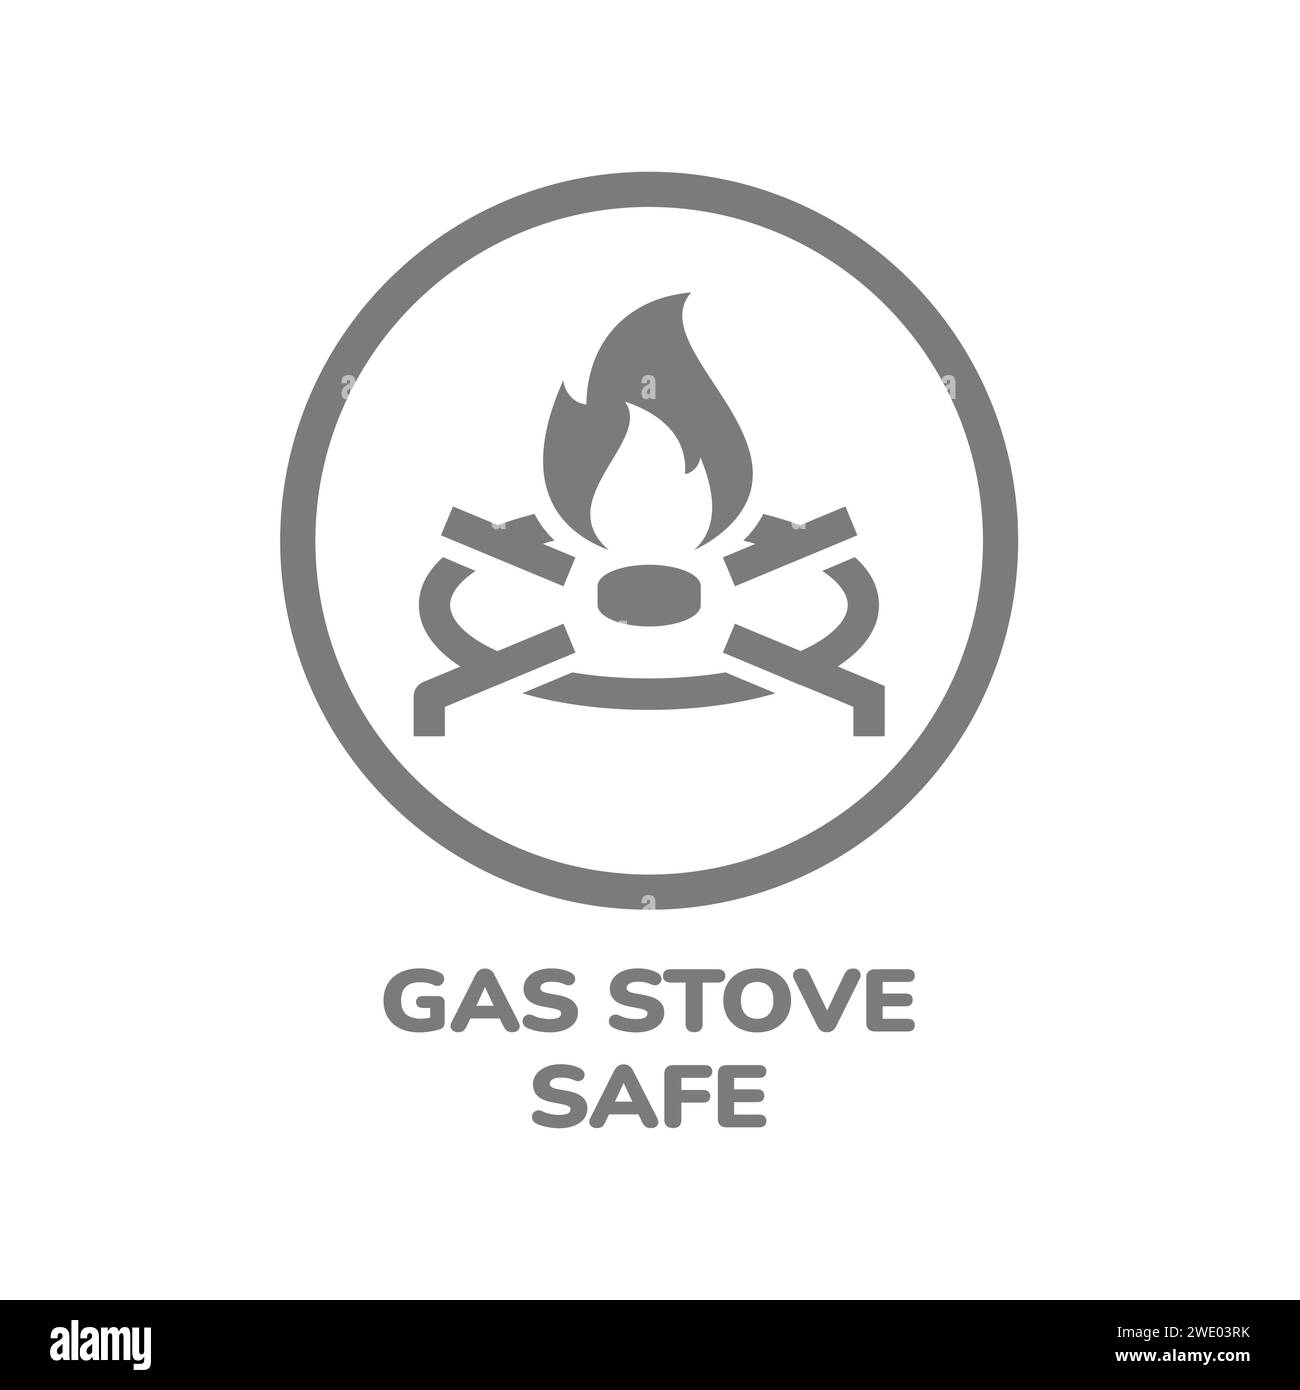 Etichetta vettoriale sicura per i fornelli a gas. Icona di stoviglie, pentole e padelle. Illustrazione Vettoriale